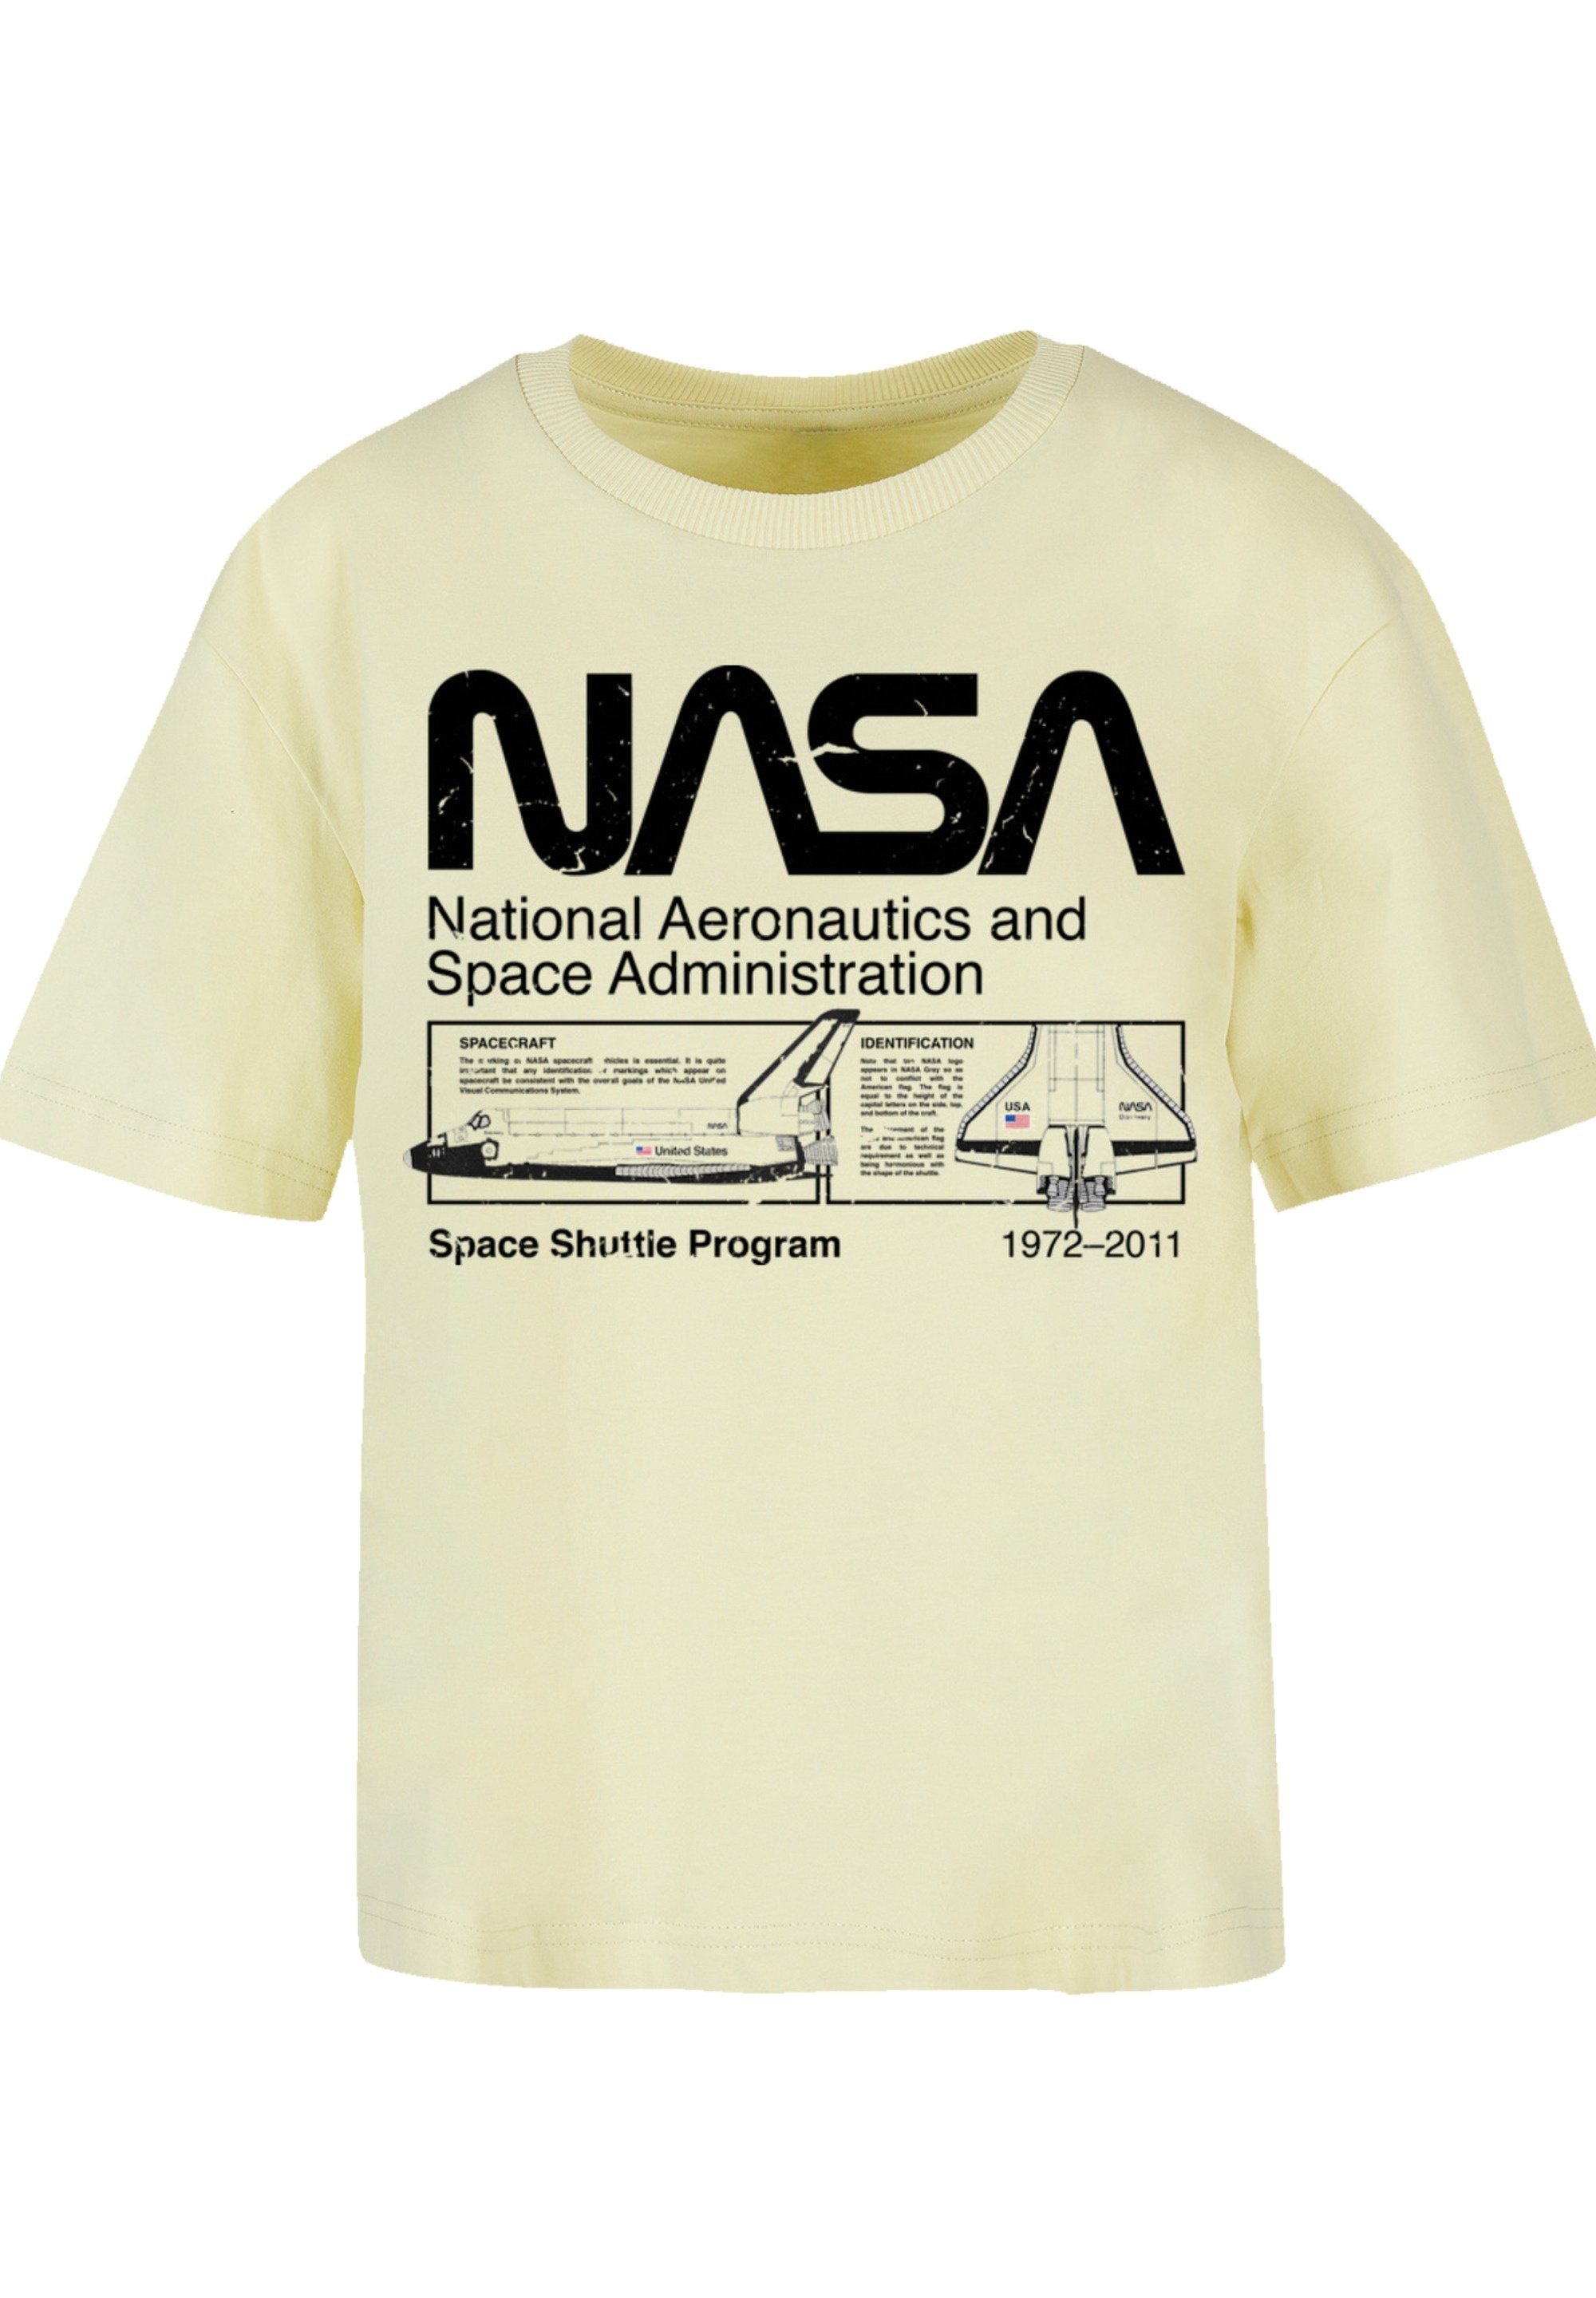 für Space Classic Shuttle T-Shirt stylischen F4NT4STIC Look Gerippter Print, Rundhalsausschnitt